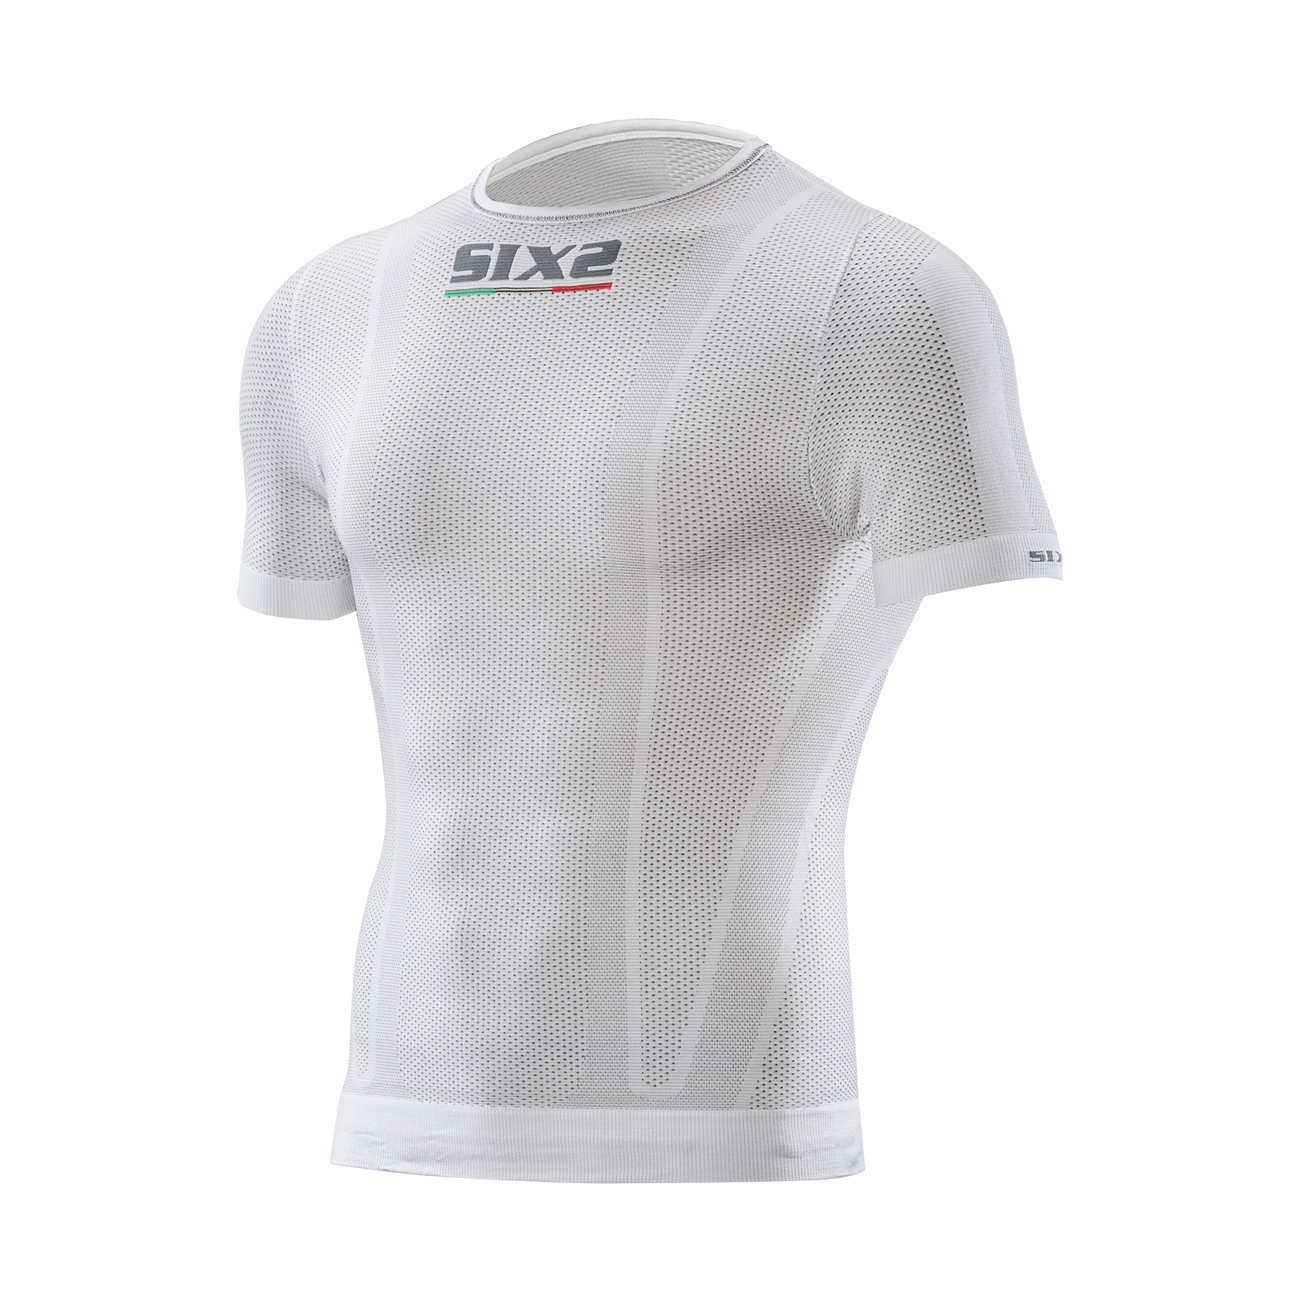 SIX2 Kolarska Koszulka Z Krótkim Rękawem - KIDS TS1 - Biały